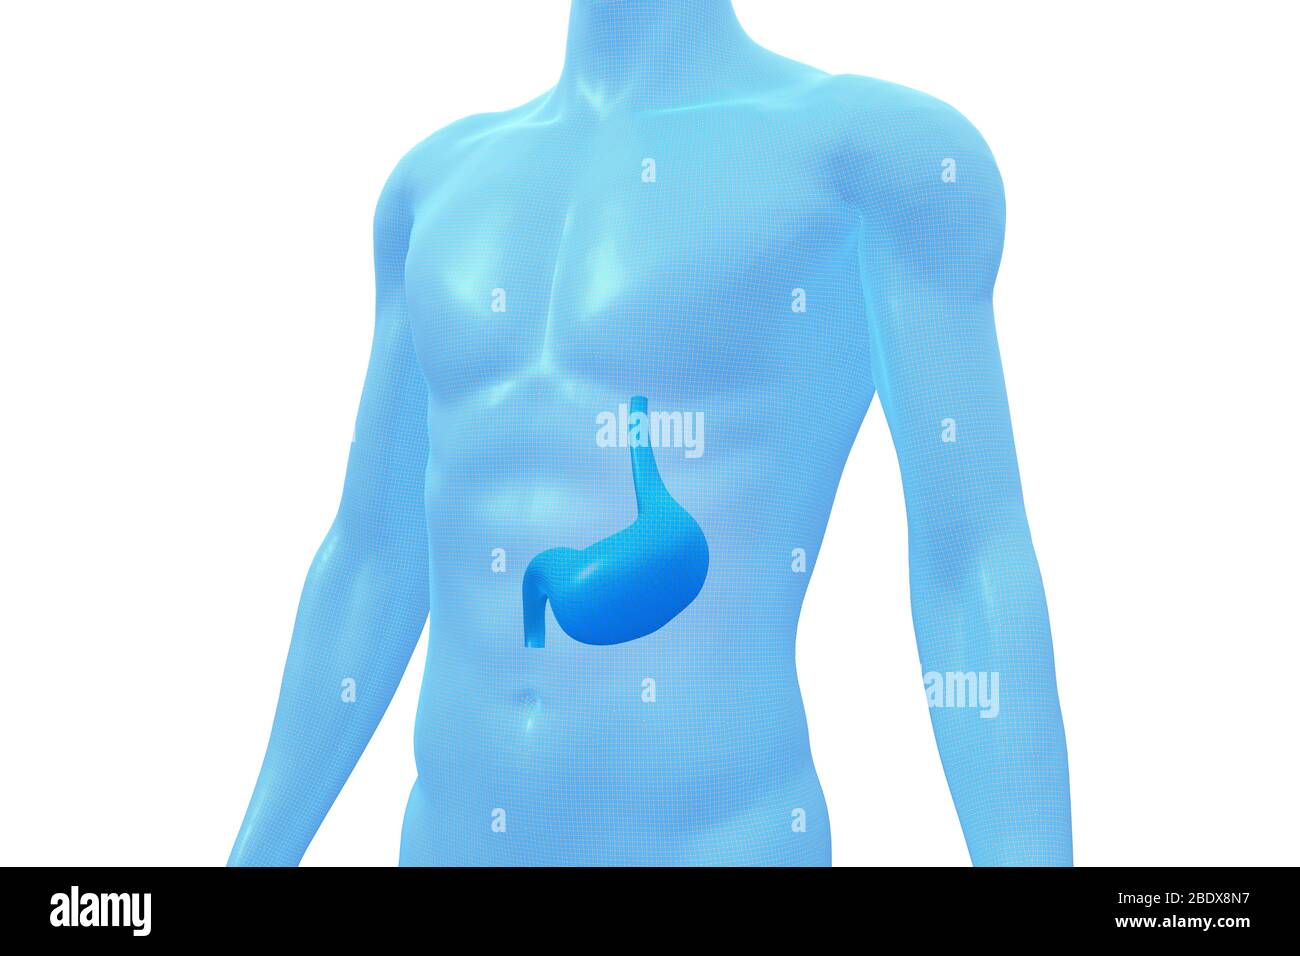 Stomaco, organo del corpo umano, modello 3D medico Foto Stock